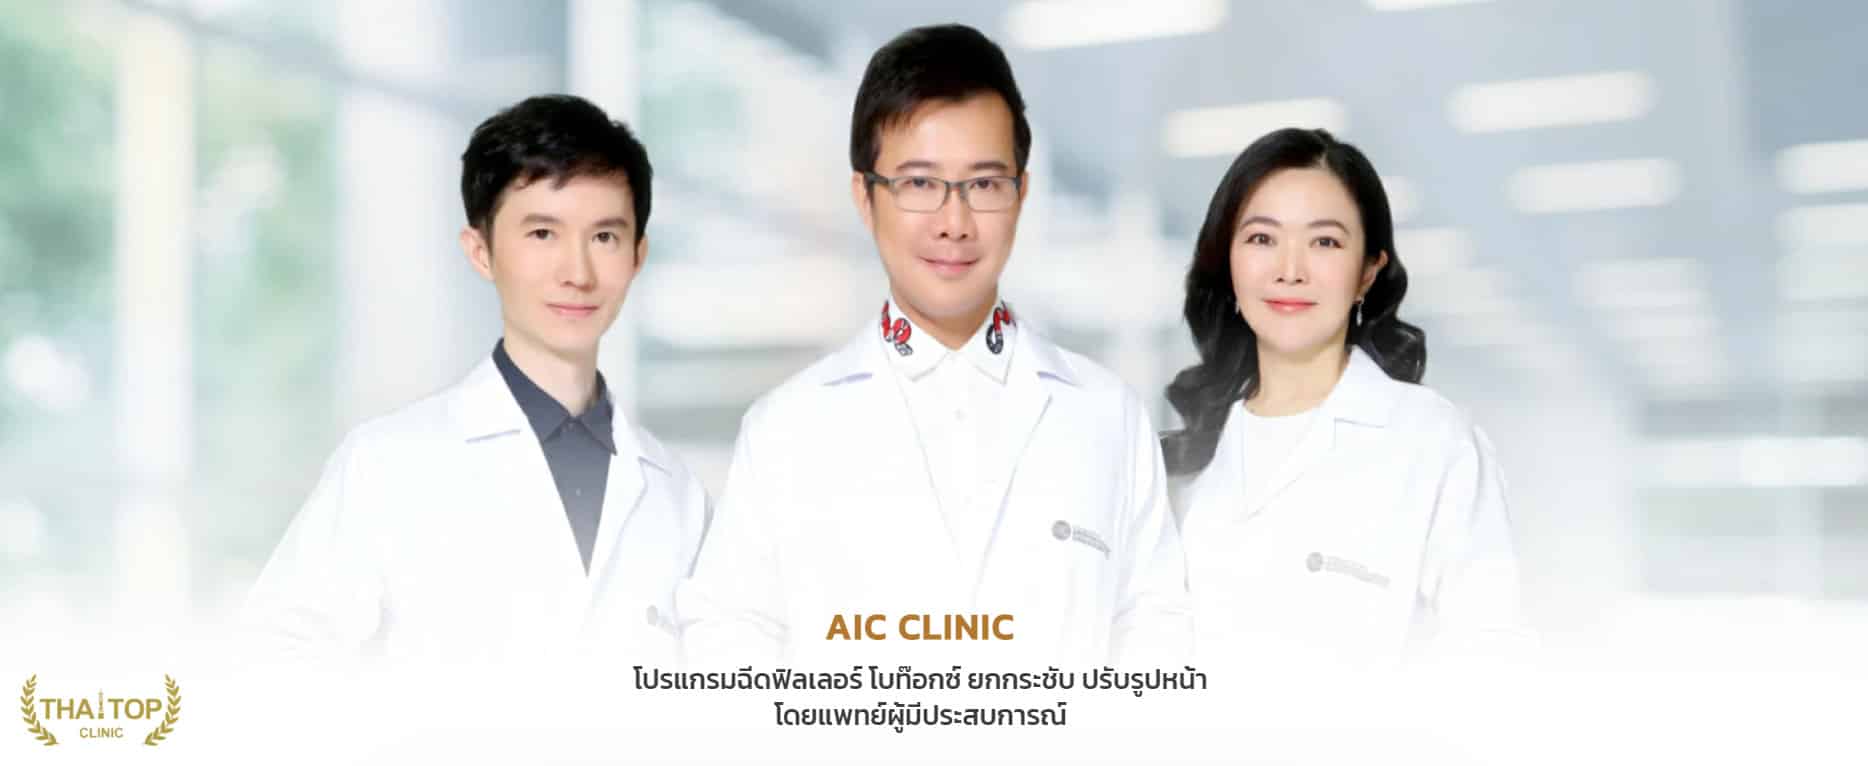 หมอพุฒิพงษ์ AIC Clinic